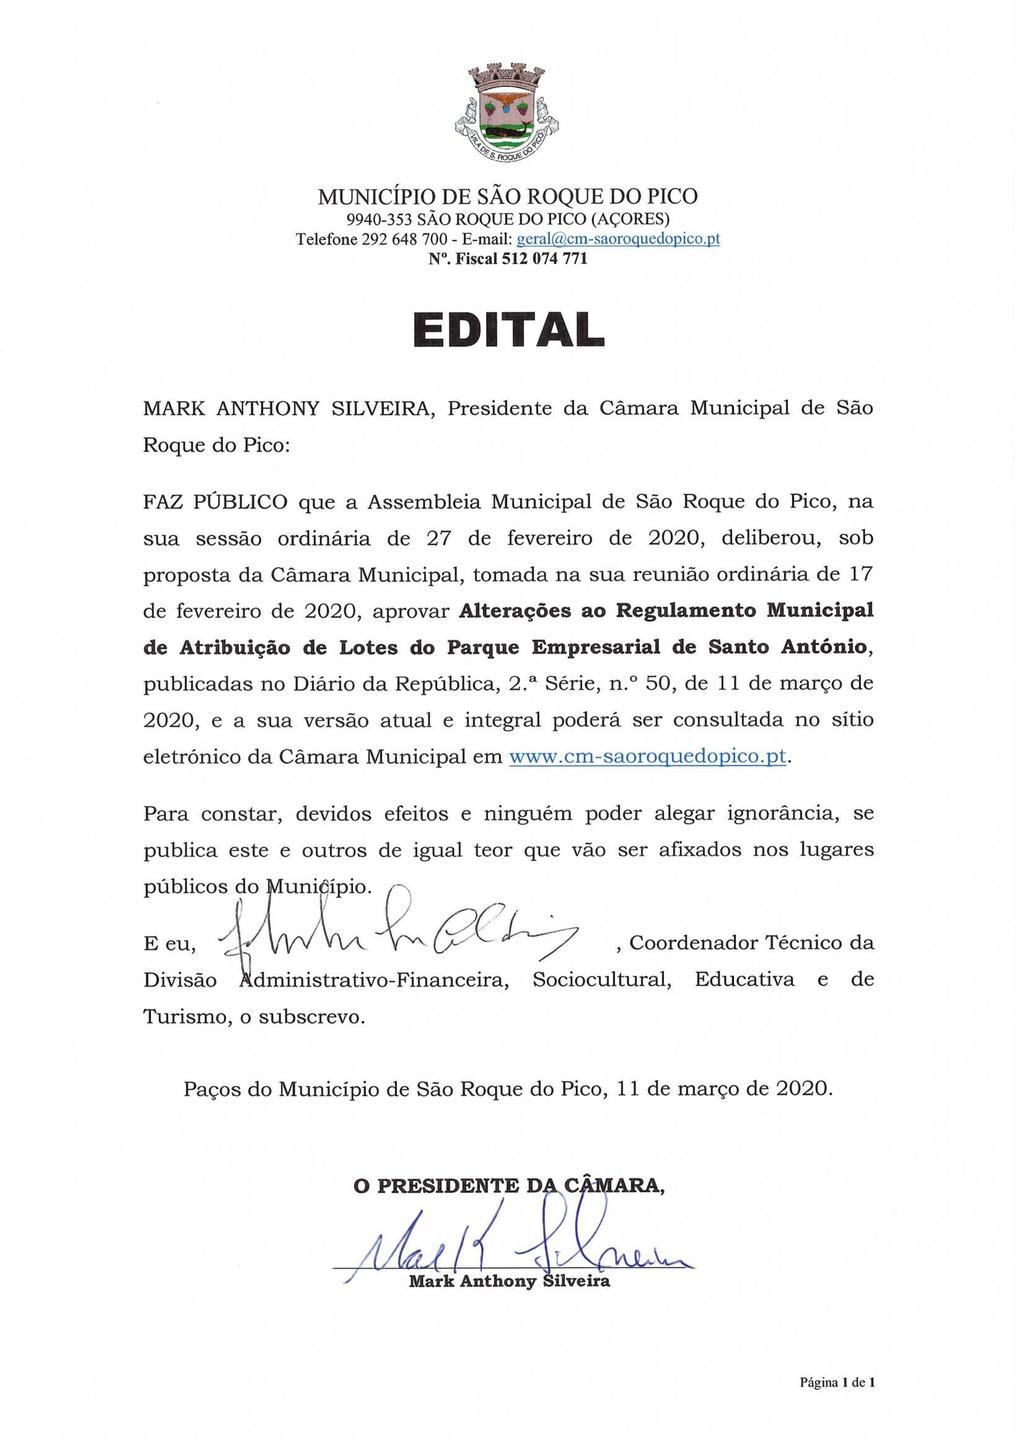 Alterações ao Regulamento Municipal de Atribuição de Lotes do Parque Empresarial de Santo António